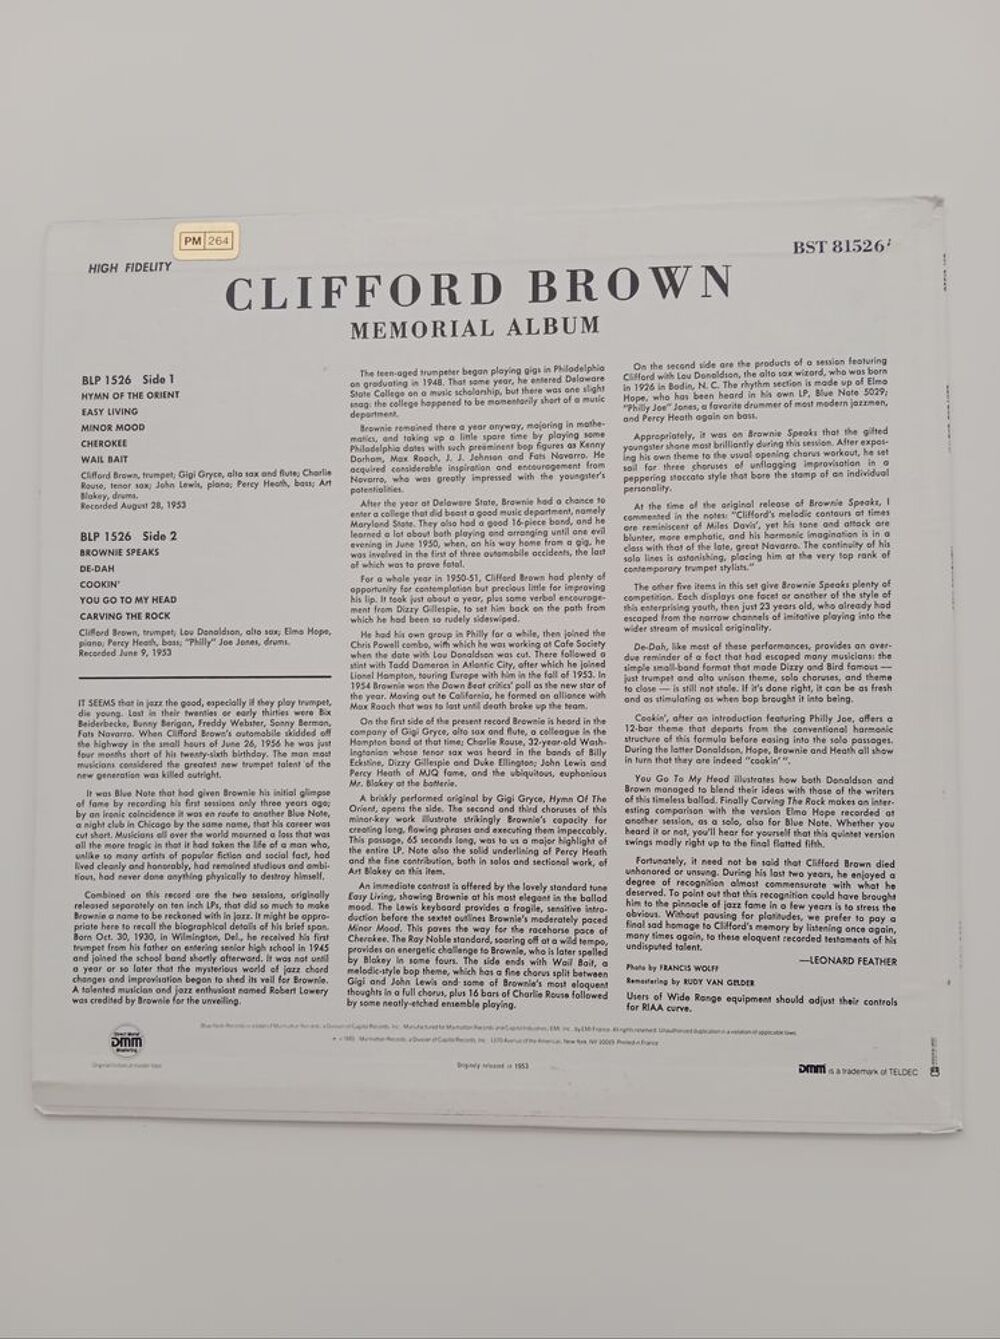 33 TOURS CLIFFORD BROWN Memorial Album (BLUE NOTE) CD et vinyles